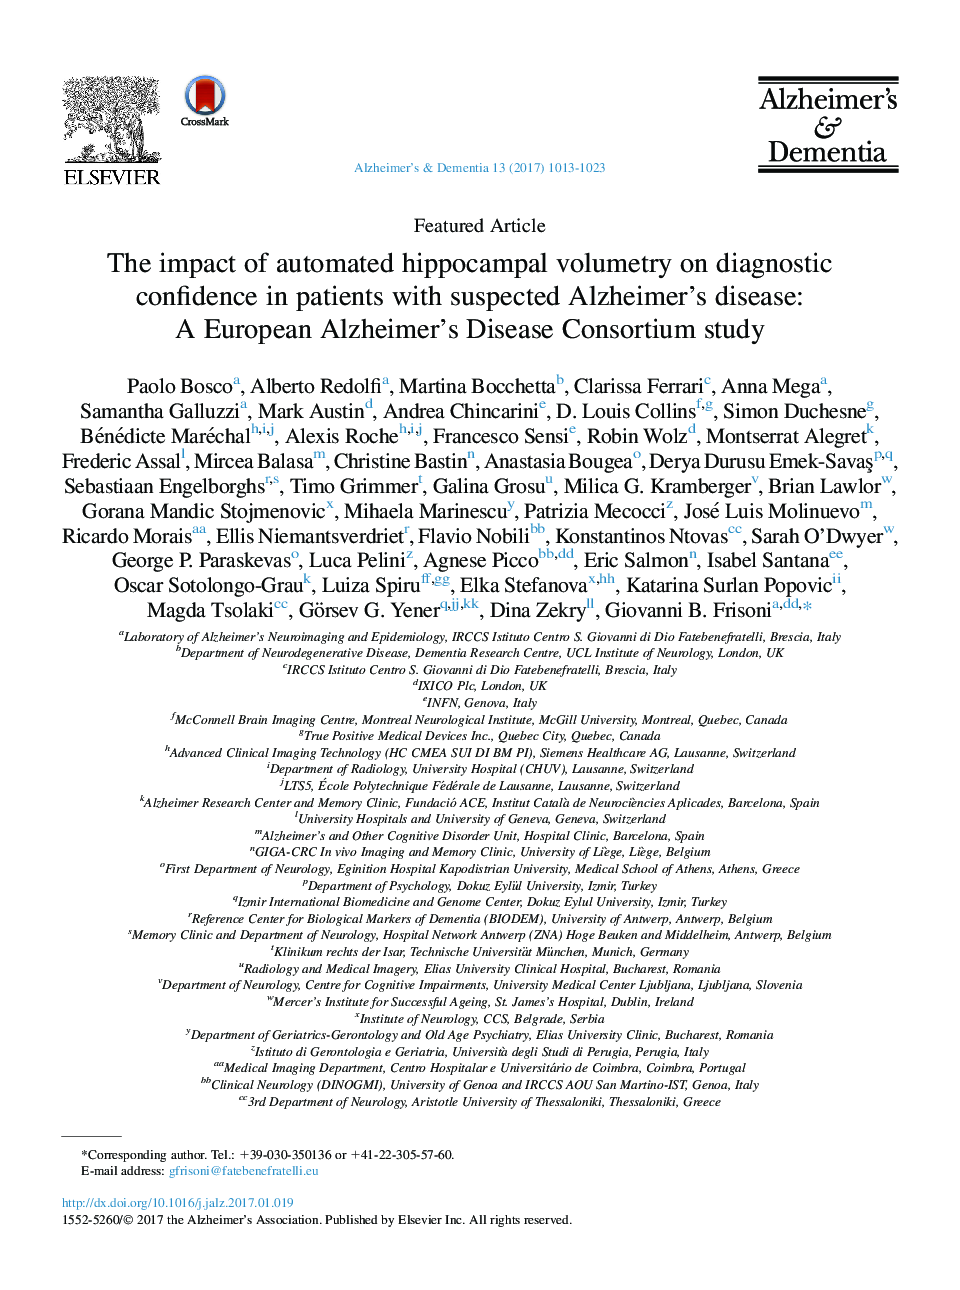 مقالات ویژه: تاثیر حجم سنجی اتوماتیک هیپوکامپ بر اعتماد تشخیصی در بیماران مبتلا به بیماری آلزایمر: یک مطالعه کنسرسیوم بیماری آلزایمر اروپا 